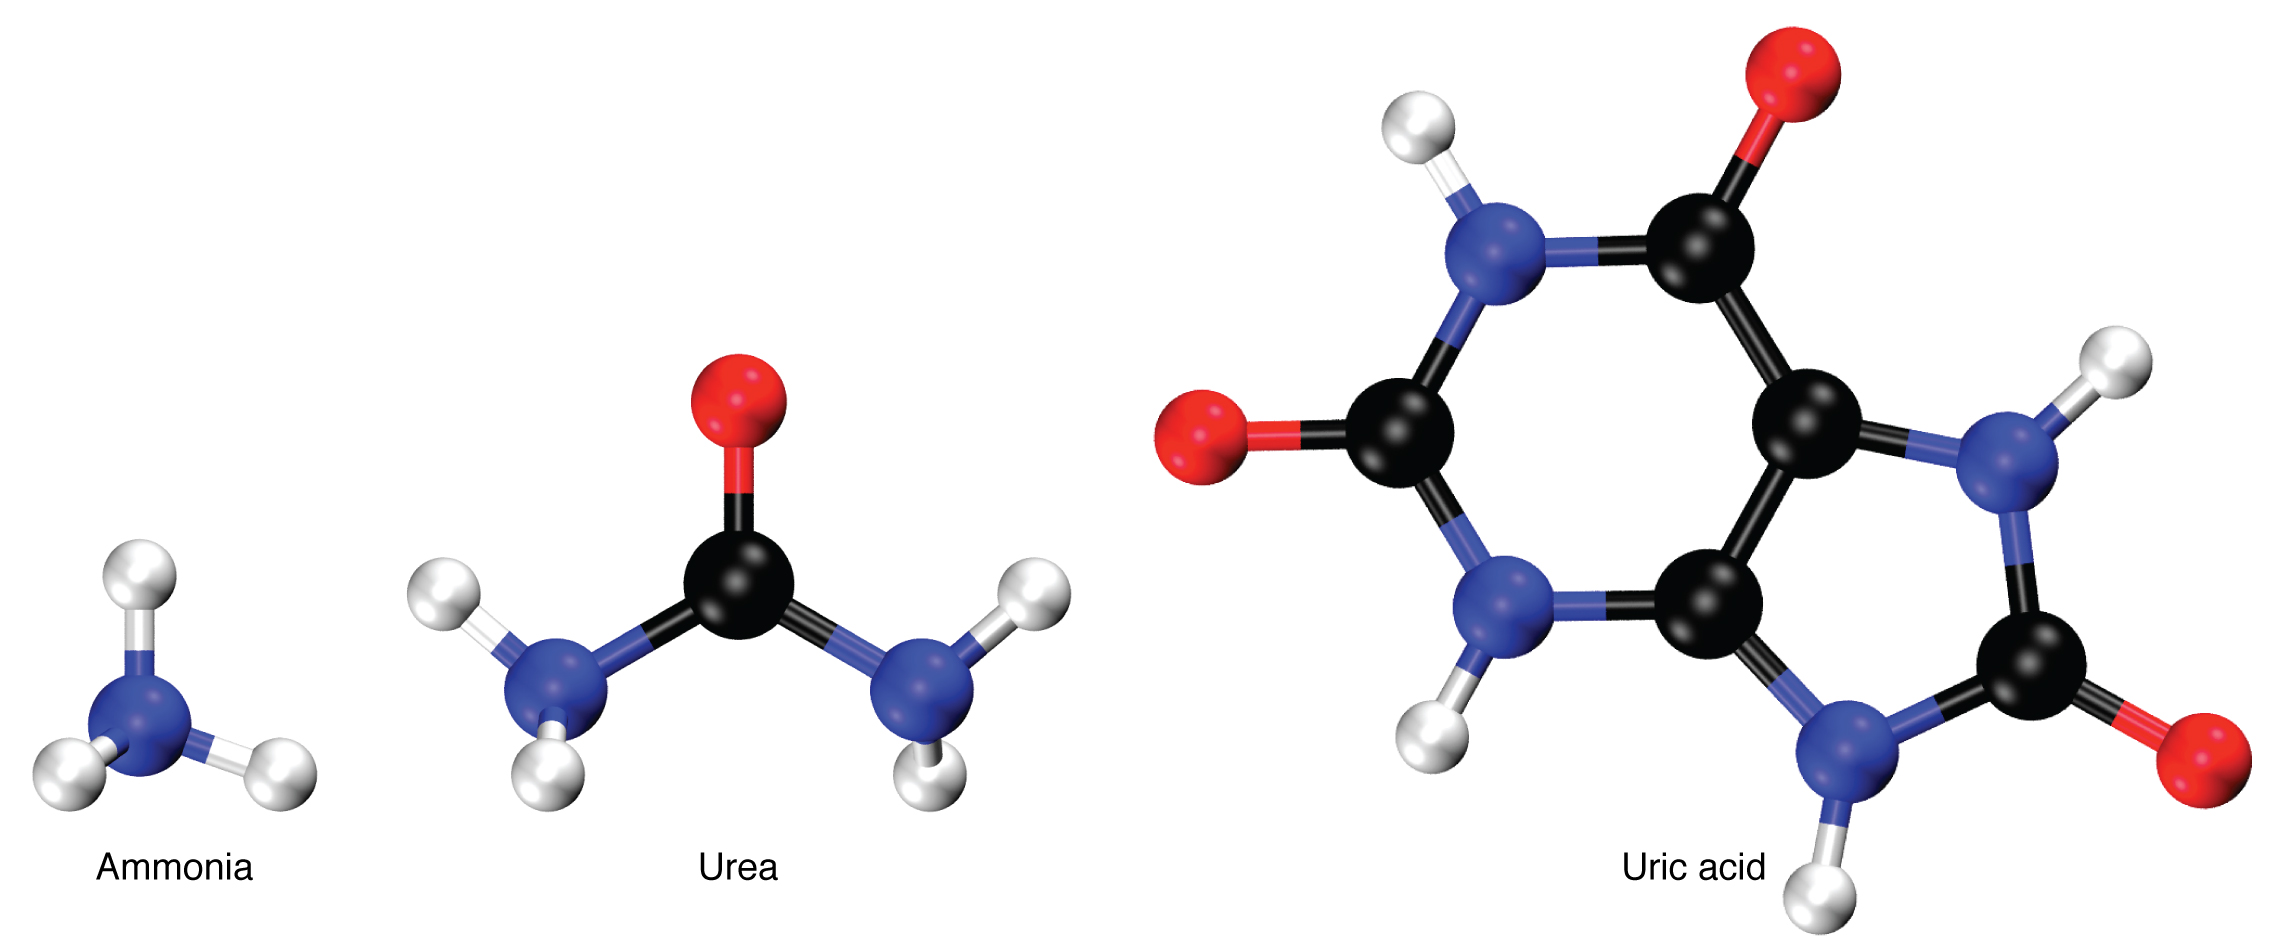 Esta figura mostra a estrutura química da amônia, uréia e ácido úrico.